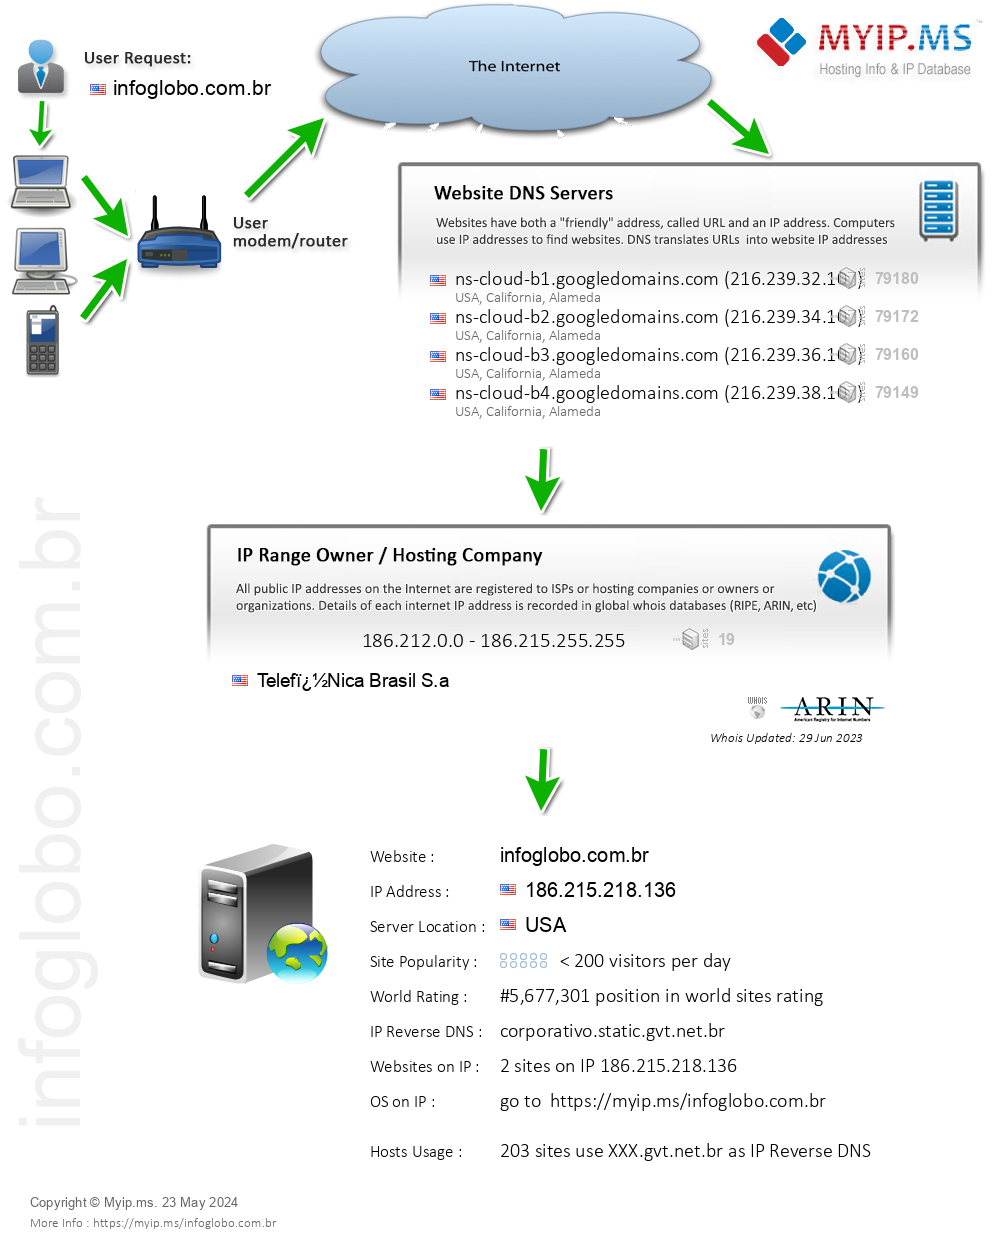 Infoglobo.com.br - Website Hosting Visual IP Diagram